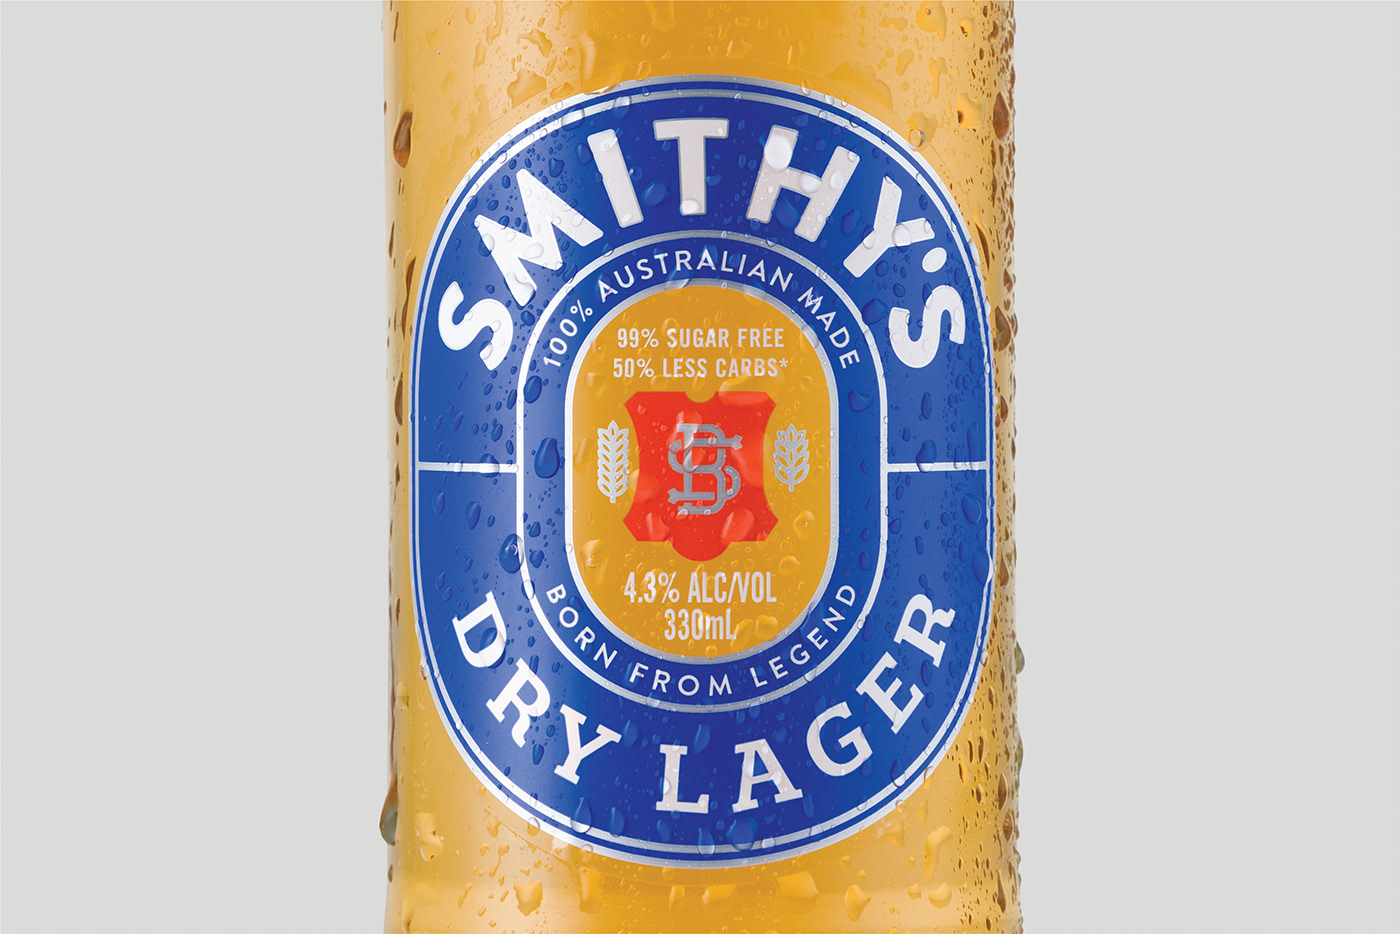 afl aussie rules australian beer beer can beer design draught beer drinks football lager Packaging